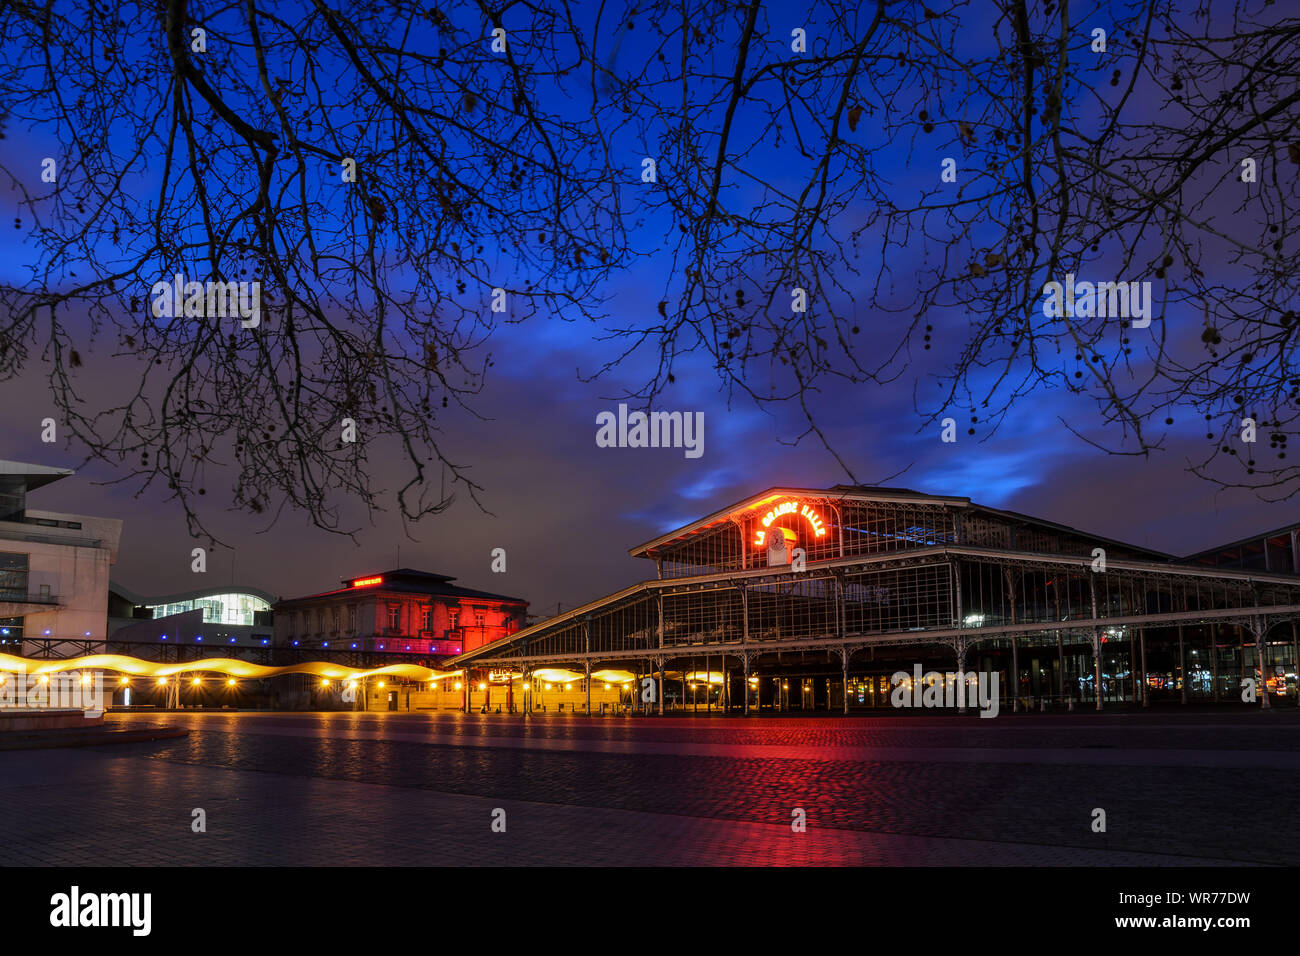 PARIS, FRANCE - FEBRUARY 16, 2014: night view of 'La Grande Halle'  in the Parc de la Villette, captured at the blue hour. Stock Photo